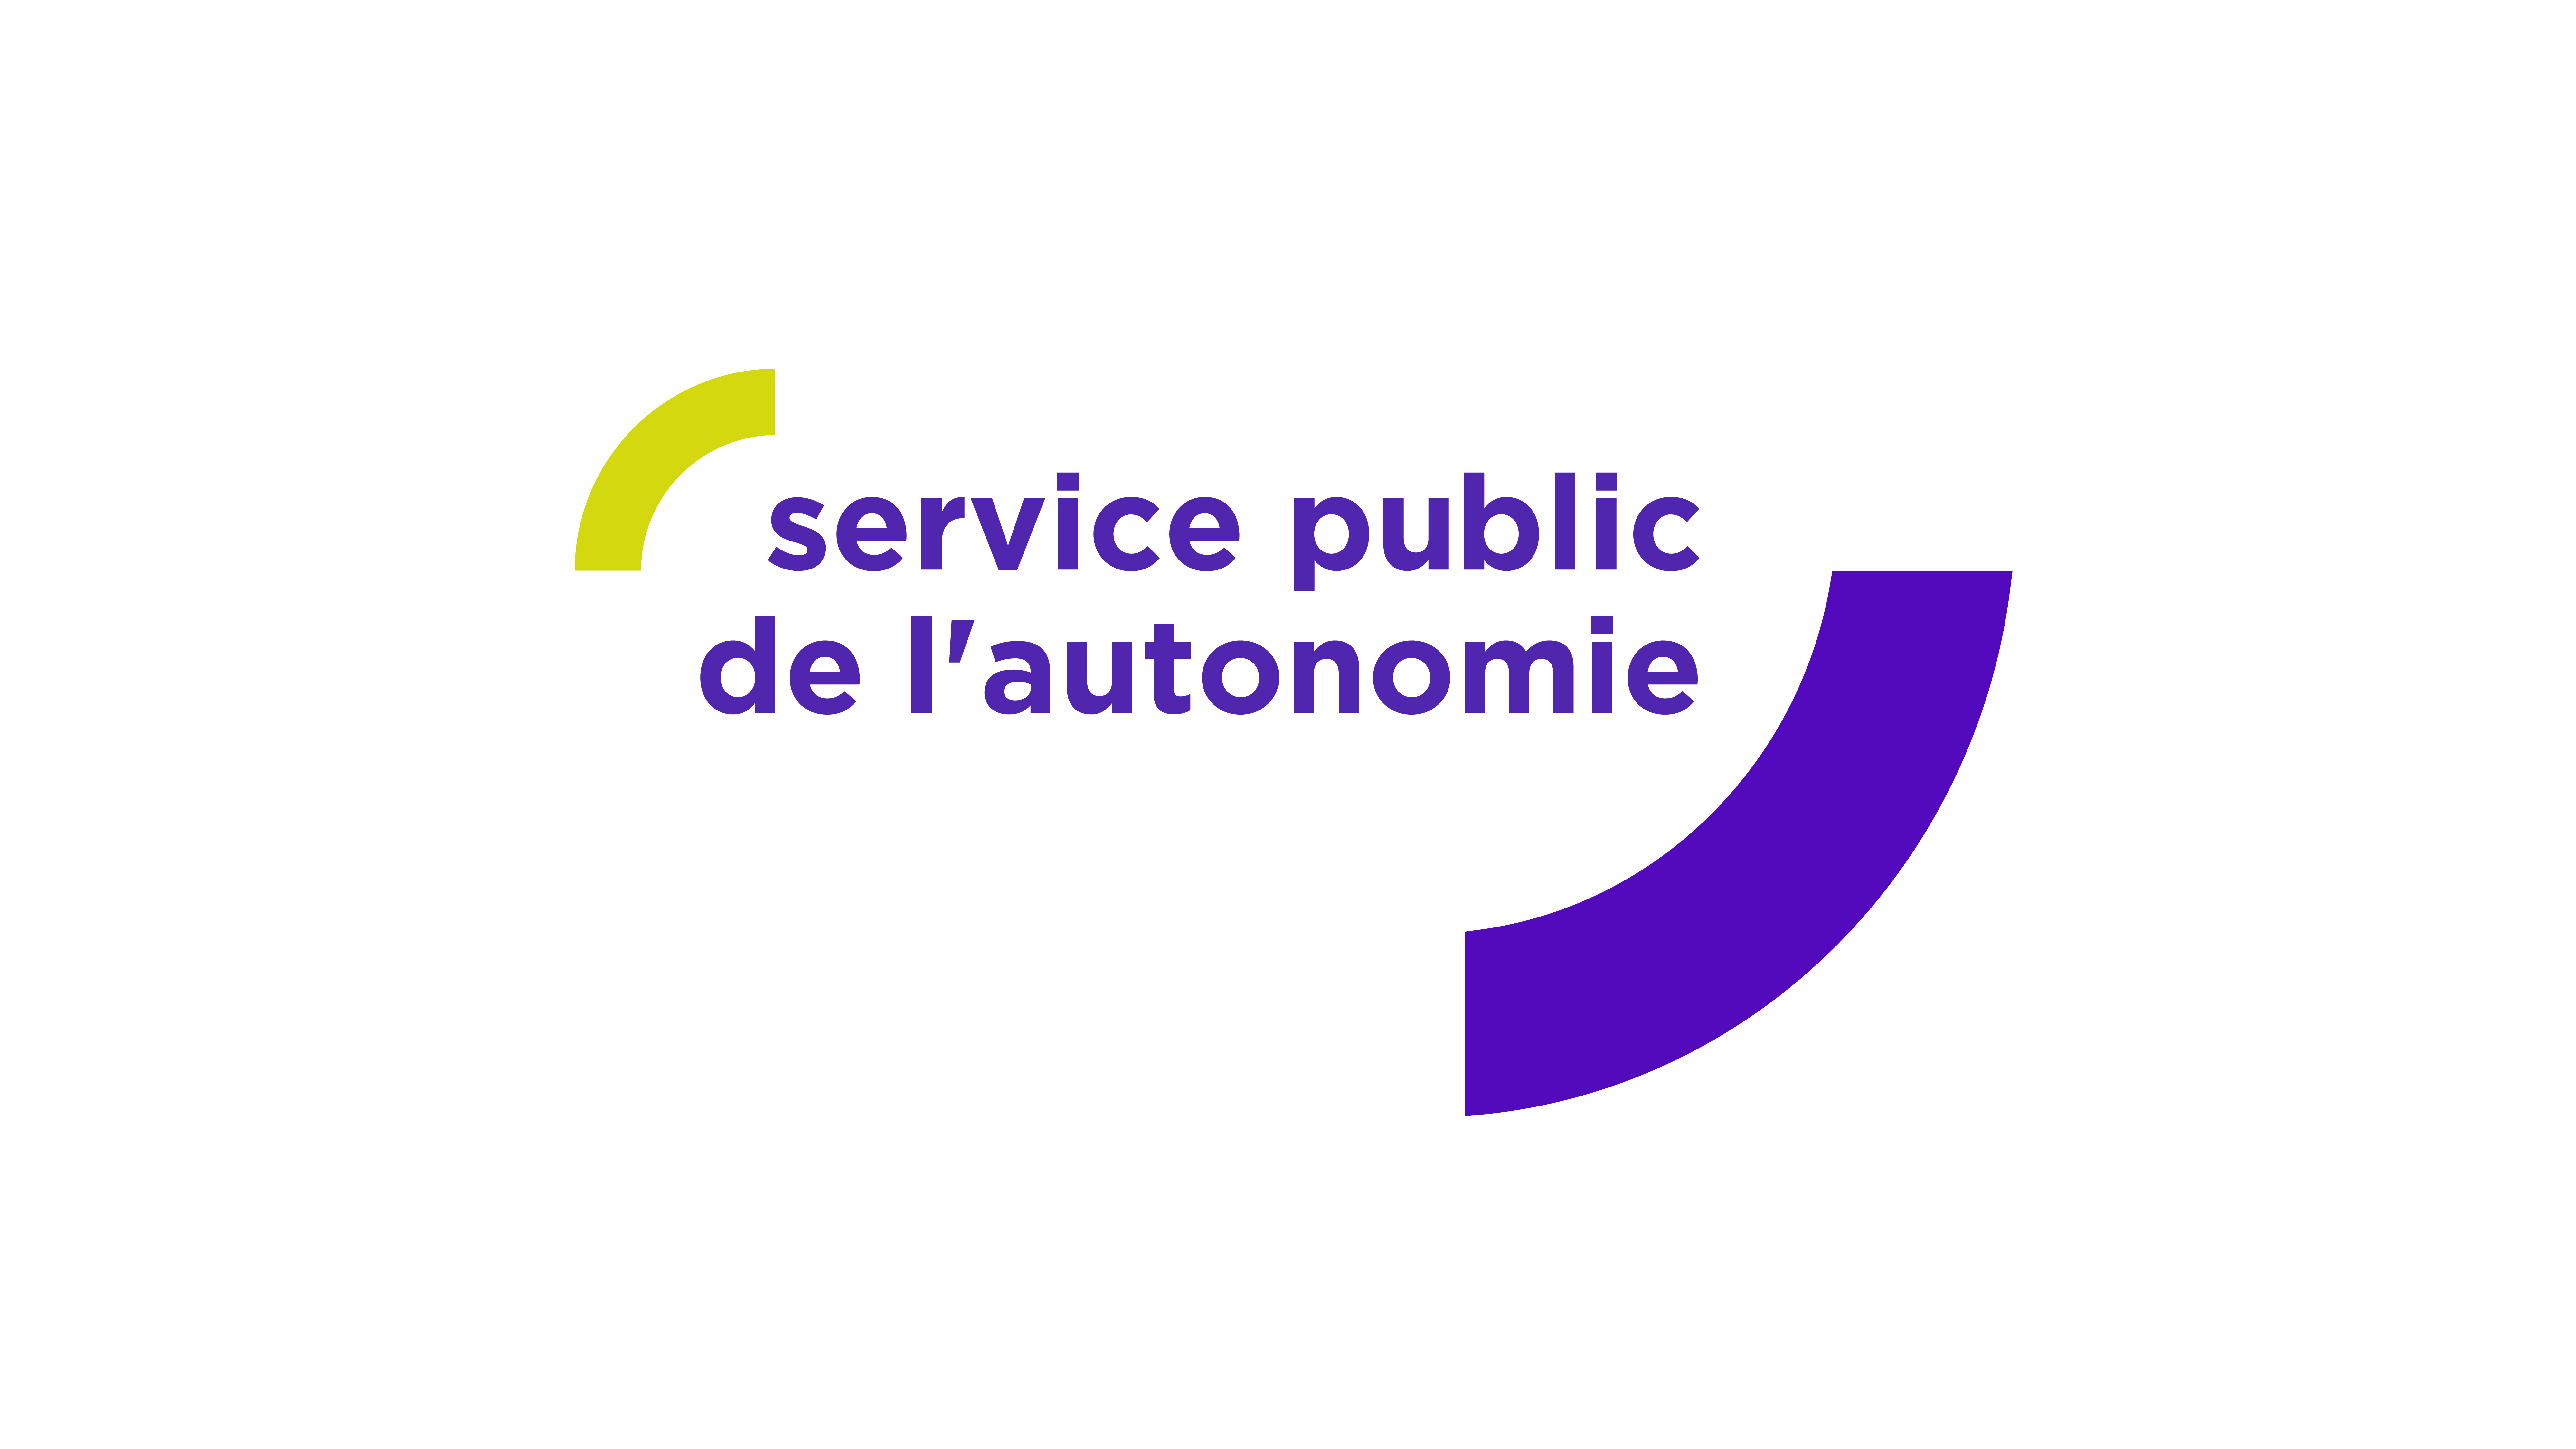 Service public de l'autonomie